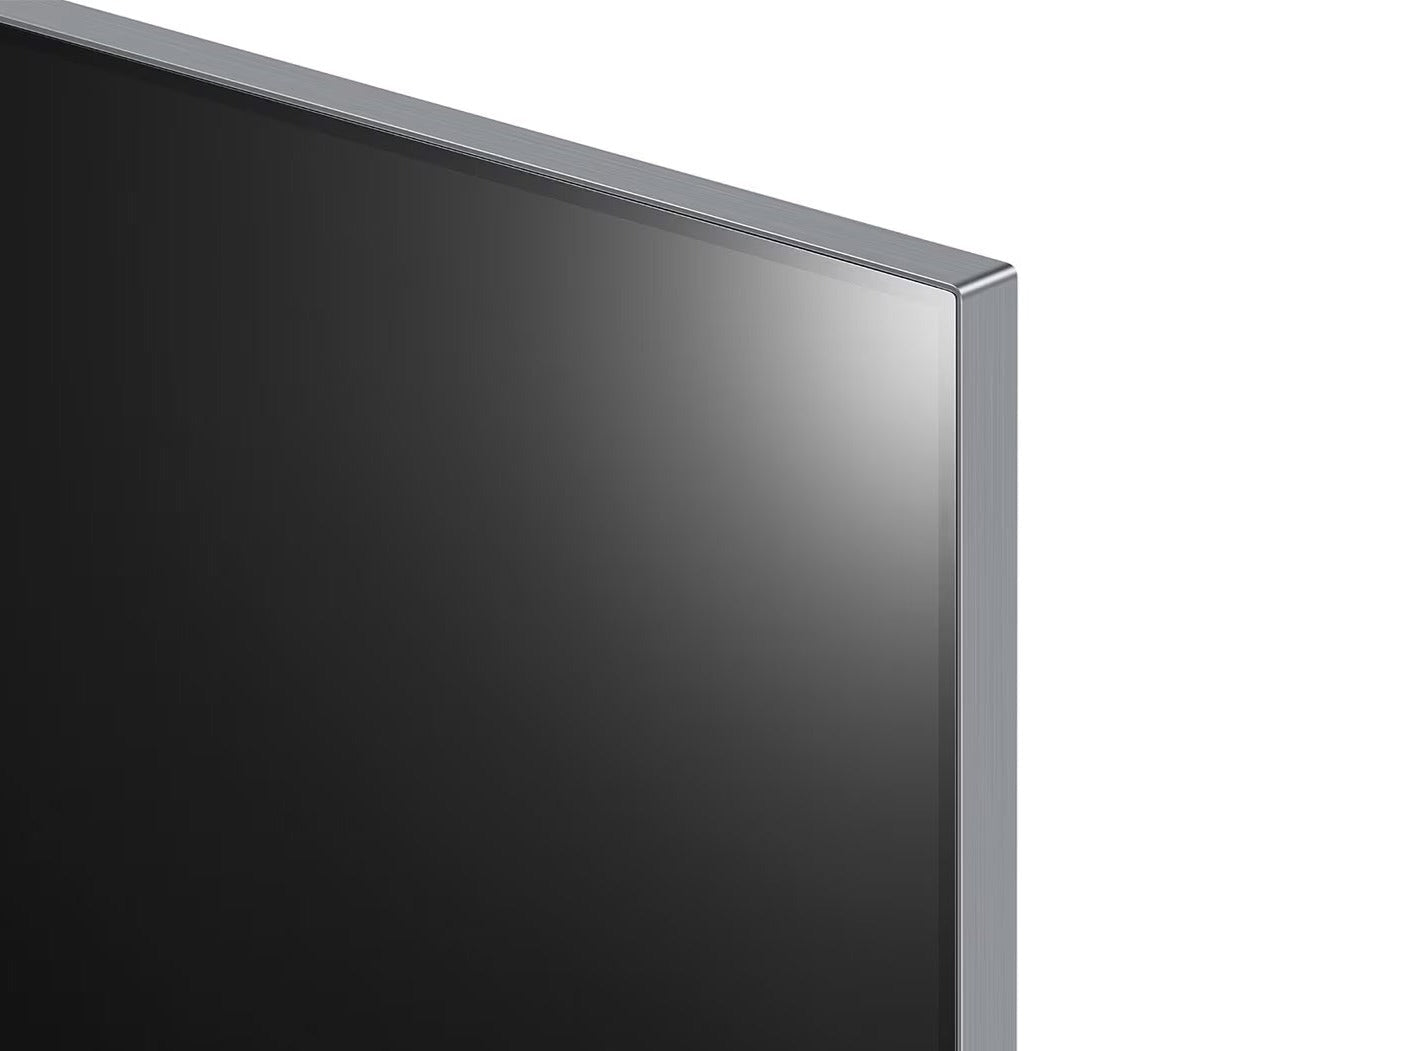 LG 97G2 OLED evo televízió jobb felső keret ráközelítve.